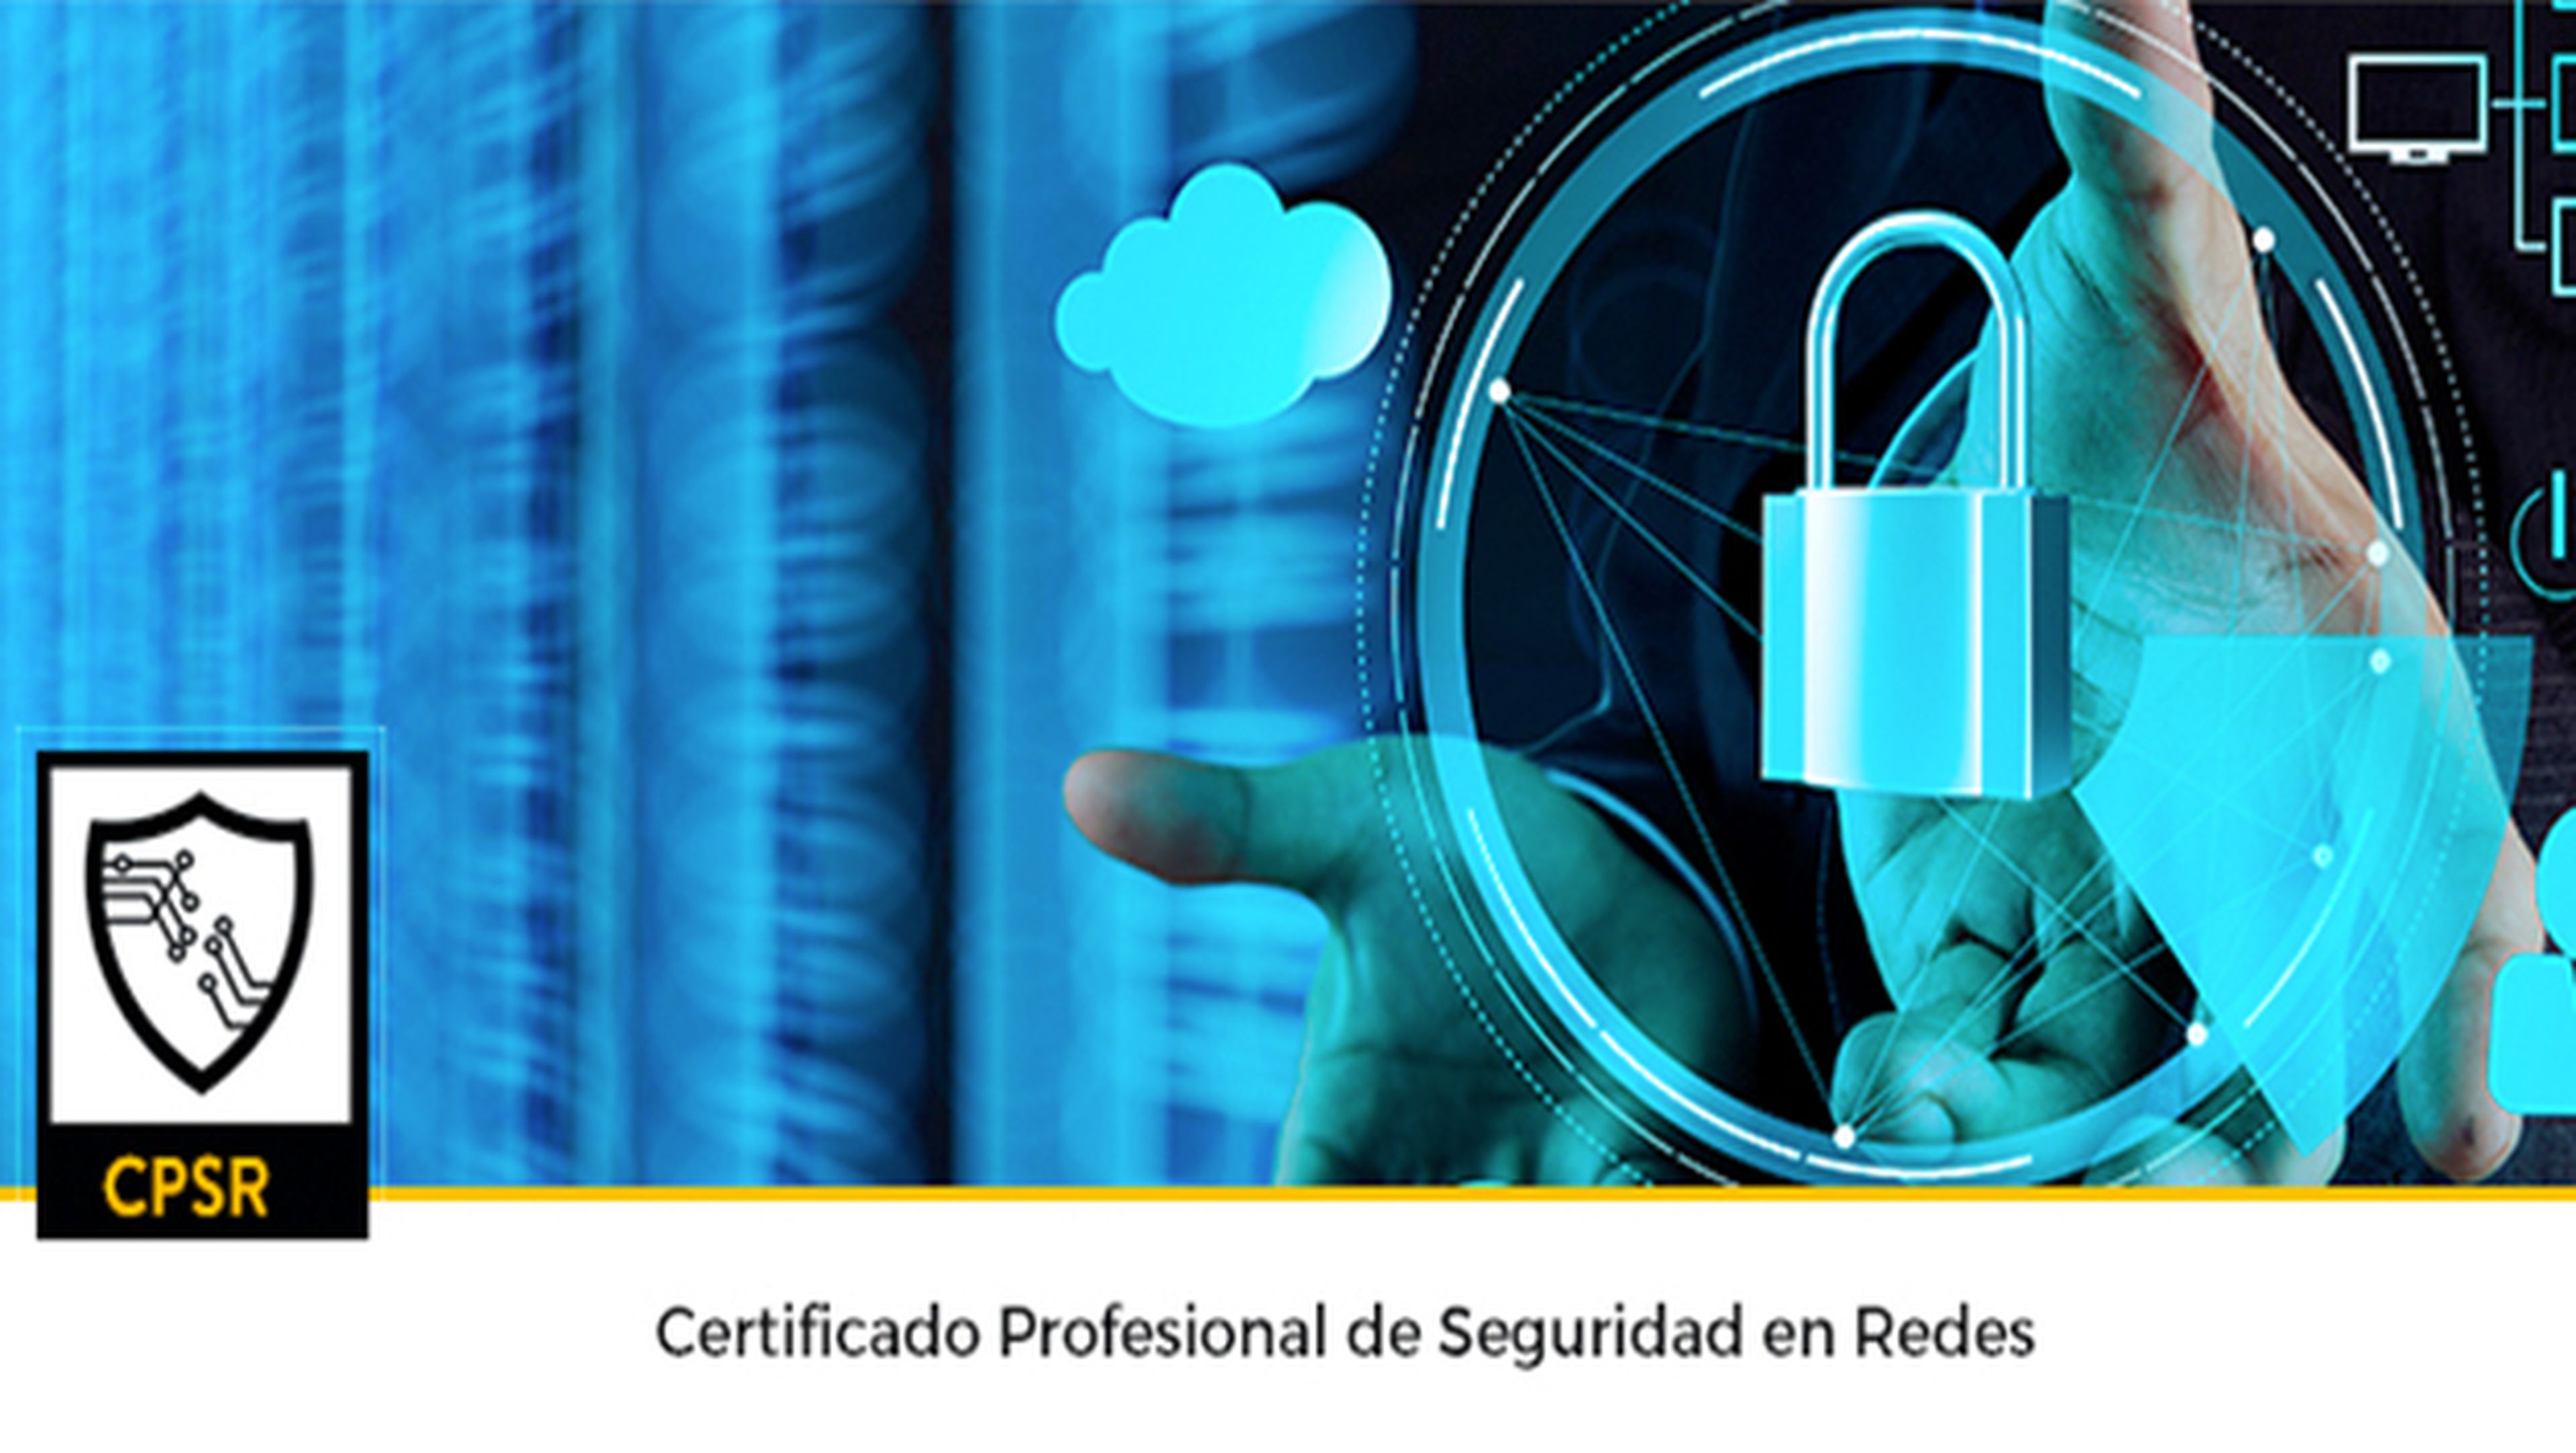 ¿Cómo obtener el Certificado Profesional de Seguridad en Redes?